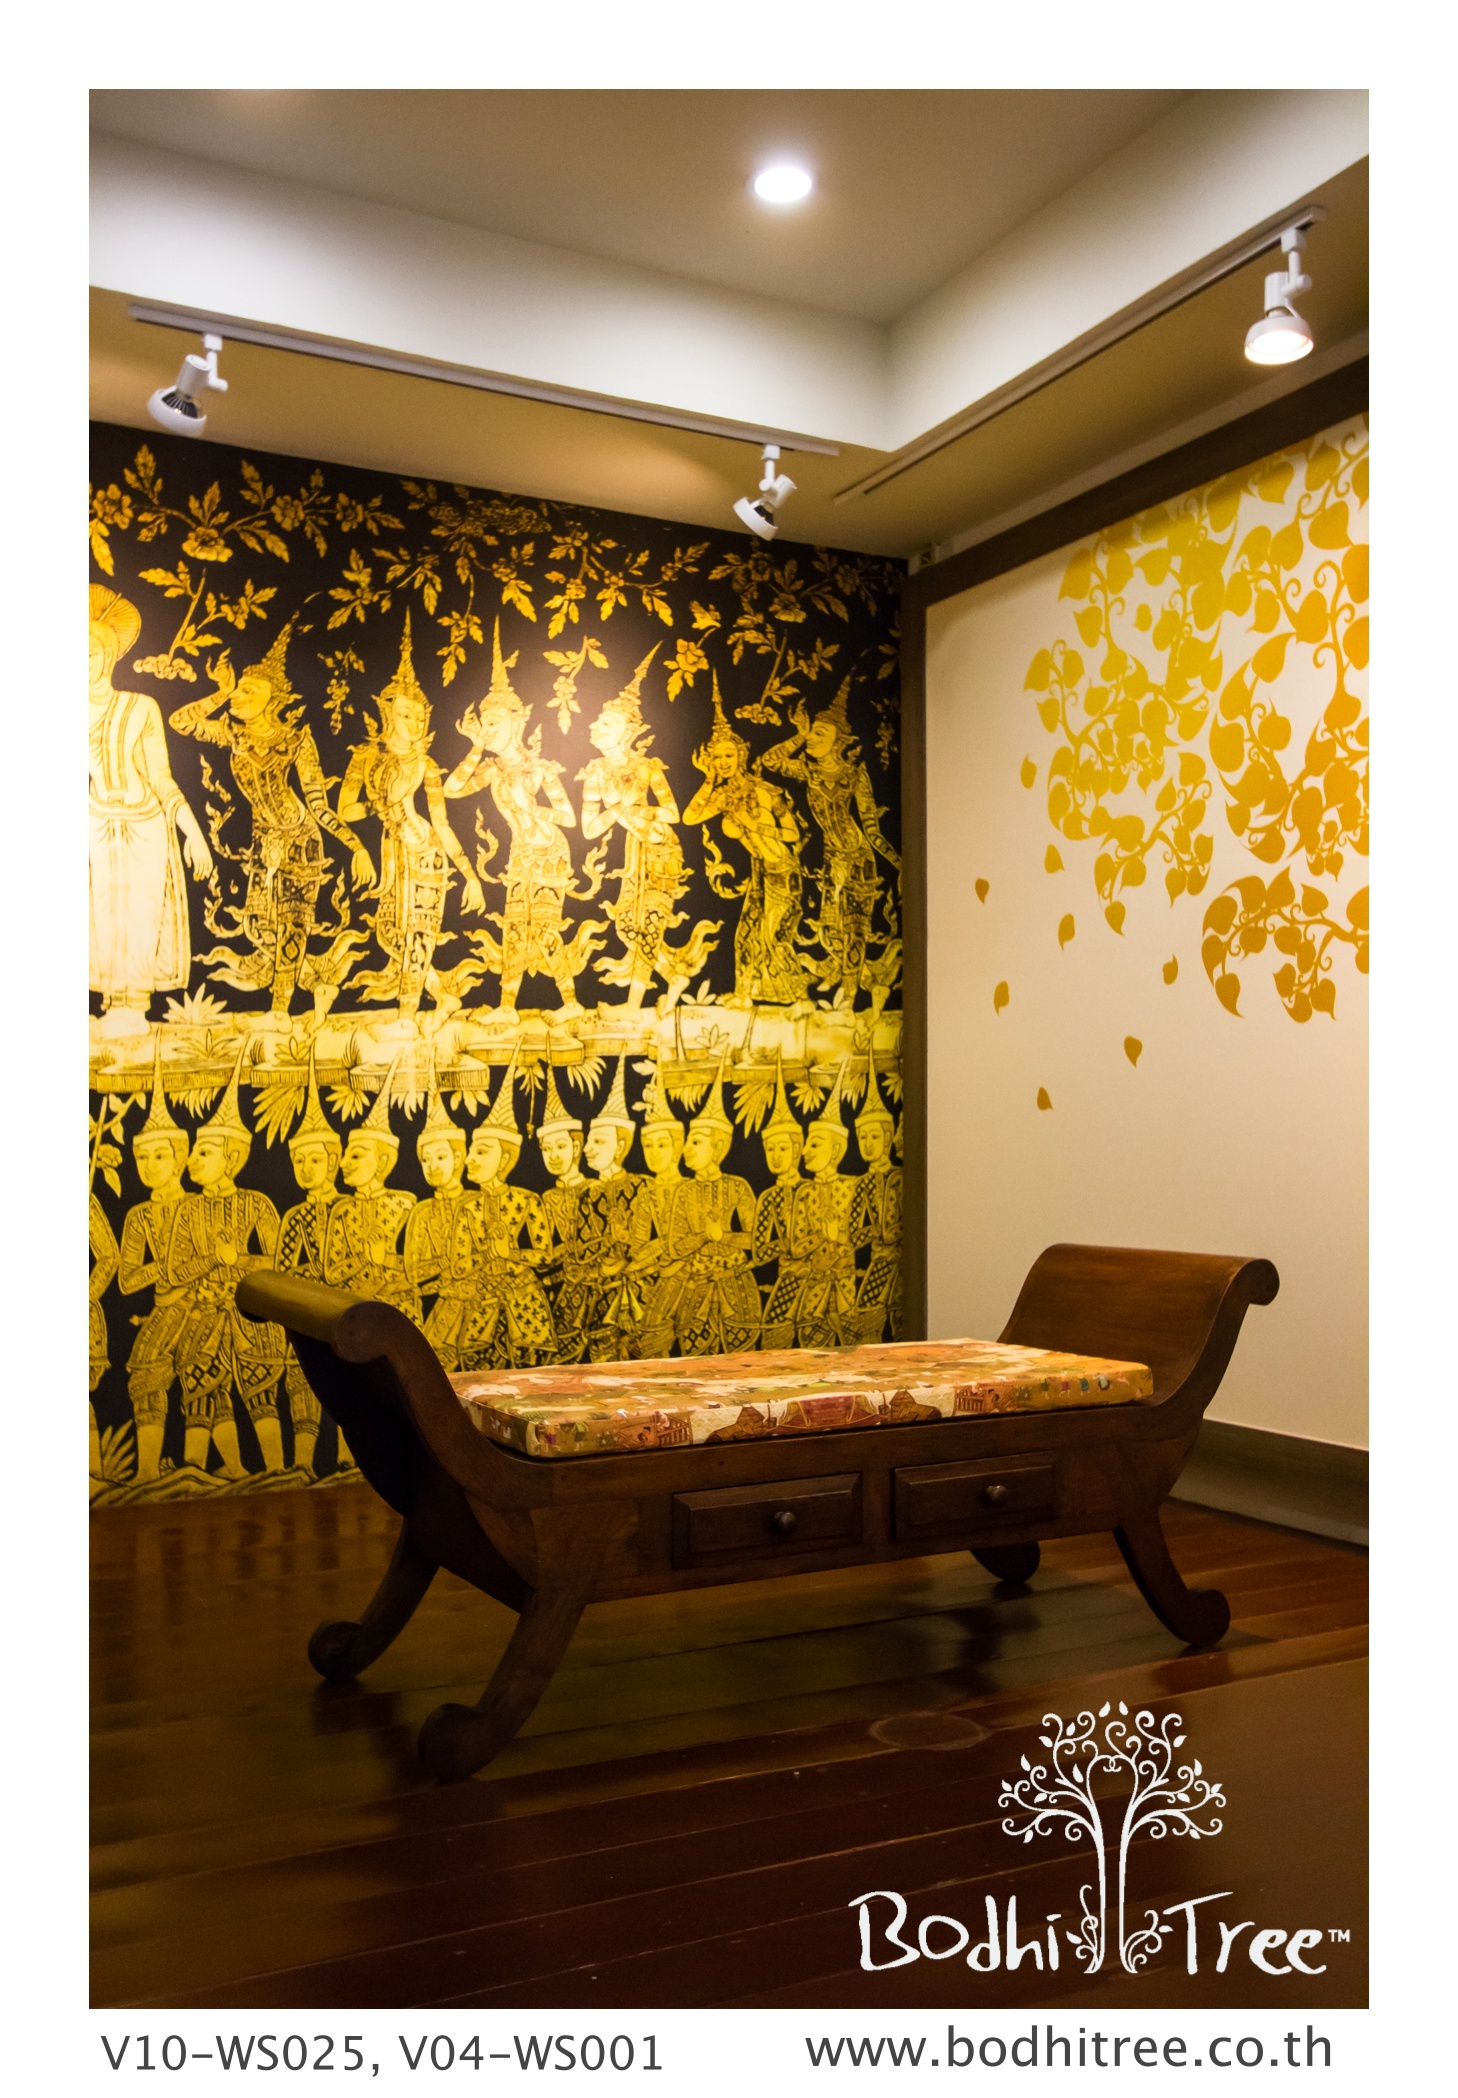 fond d'écran d'arbre de bodhi,mur,meubles,design d'intérieur,jaune,chambre